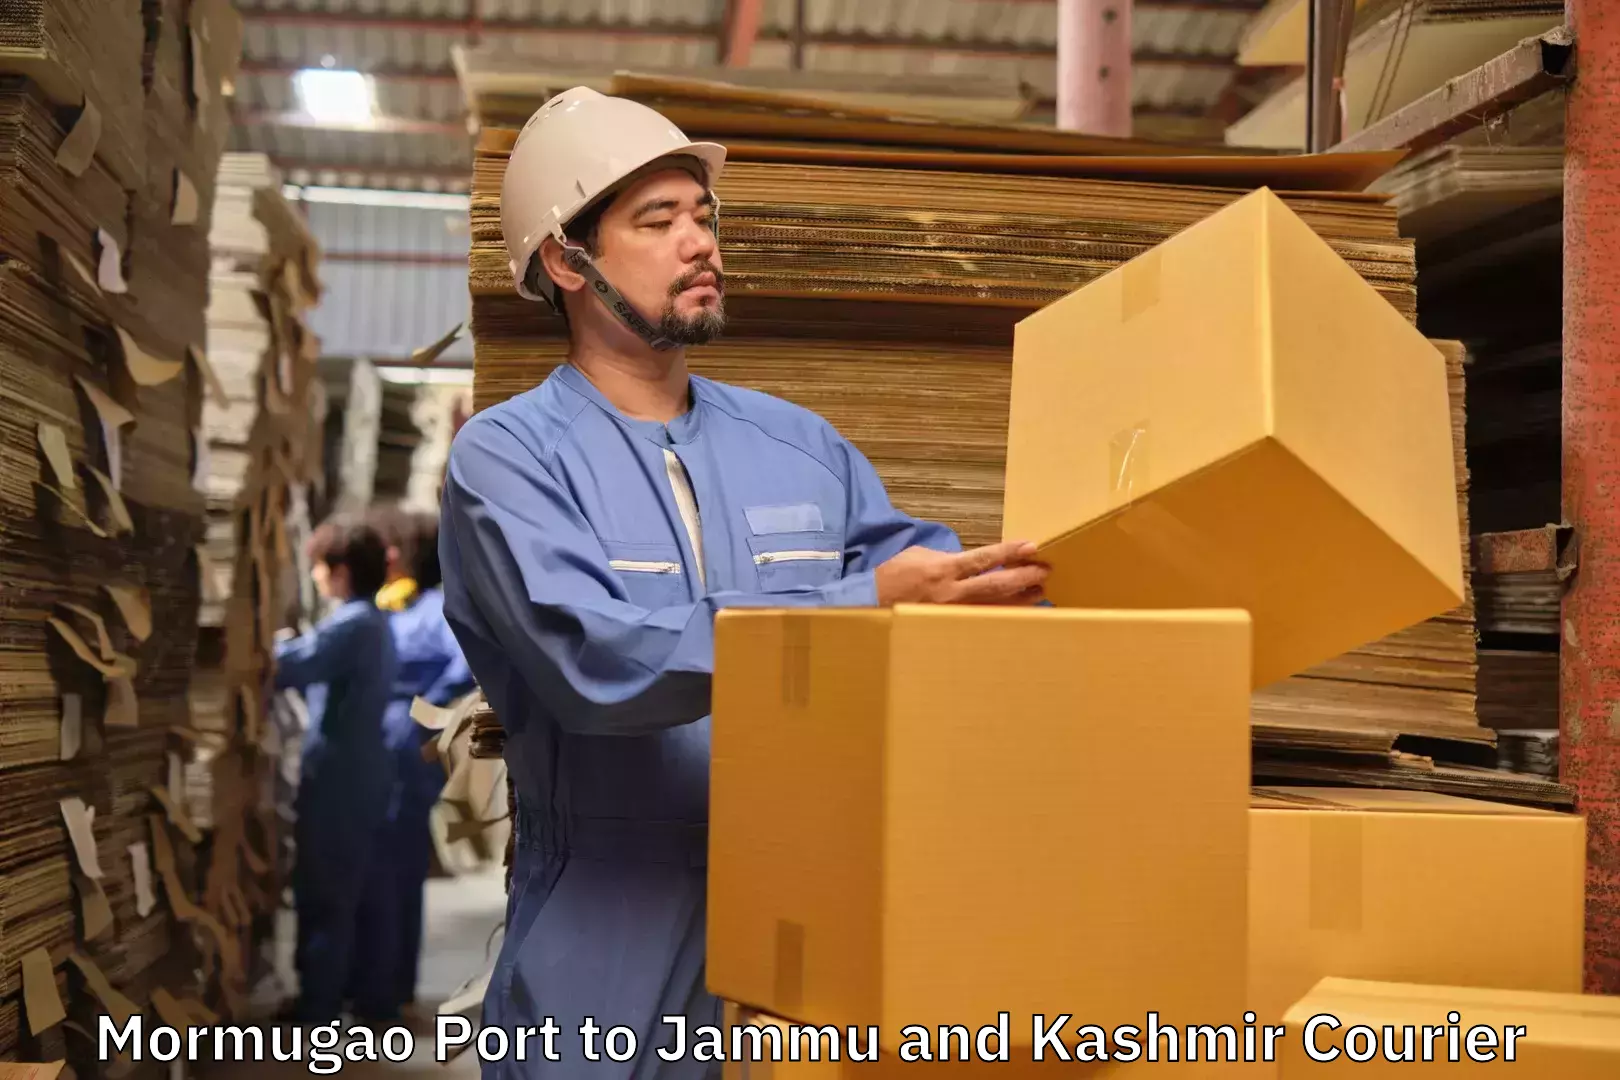 Baggage shipping calculator Mormugao Port to Srinagar Kashmir